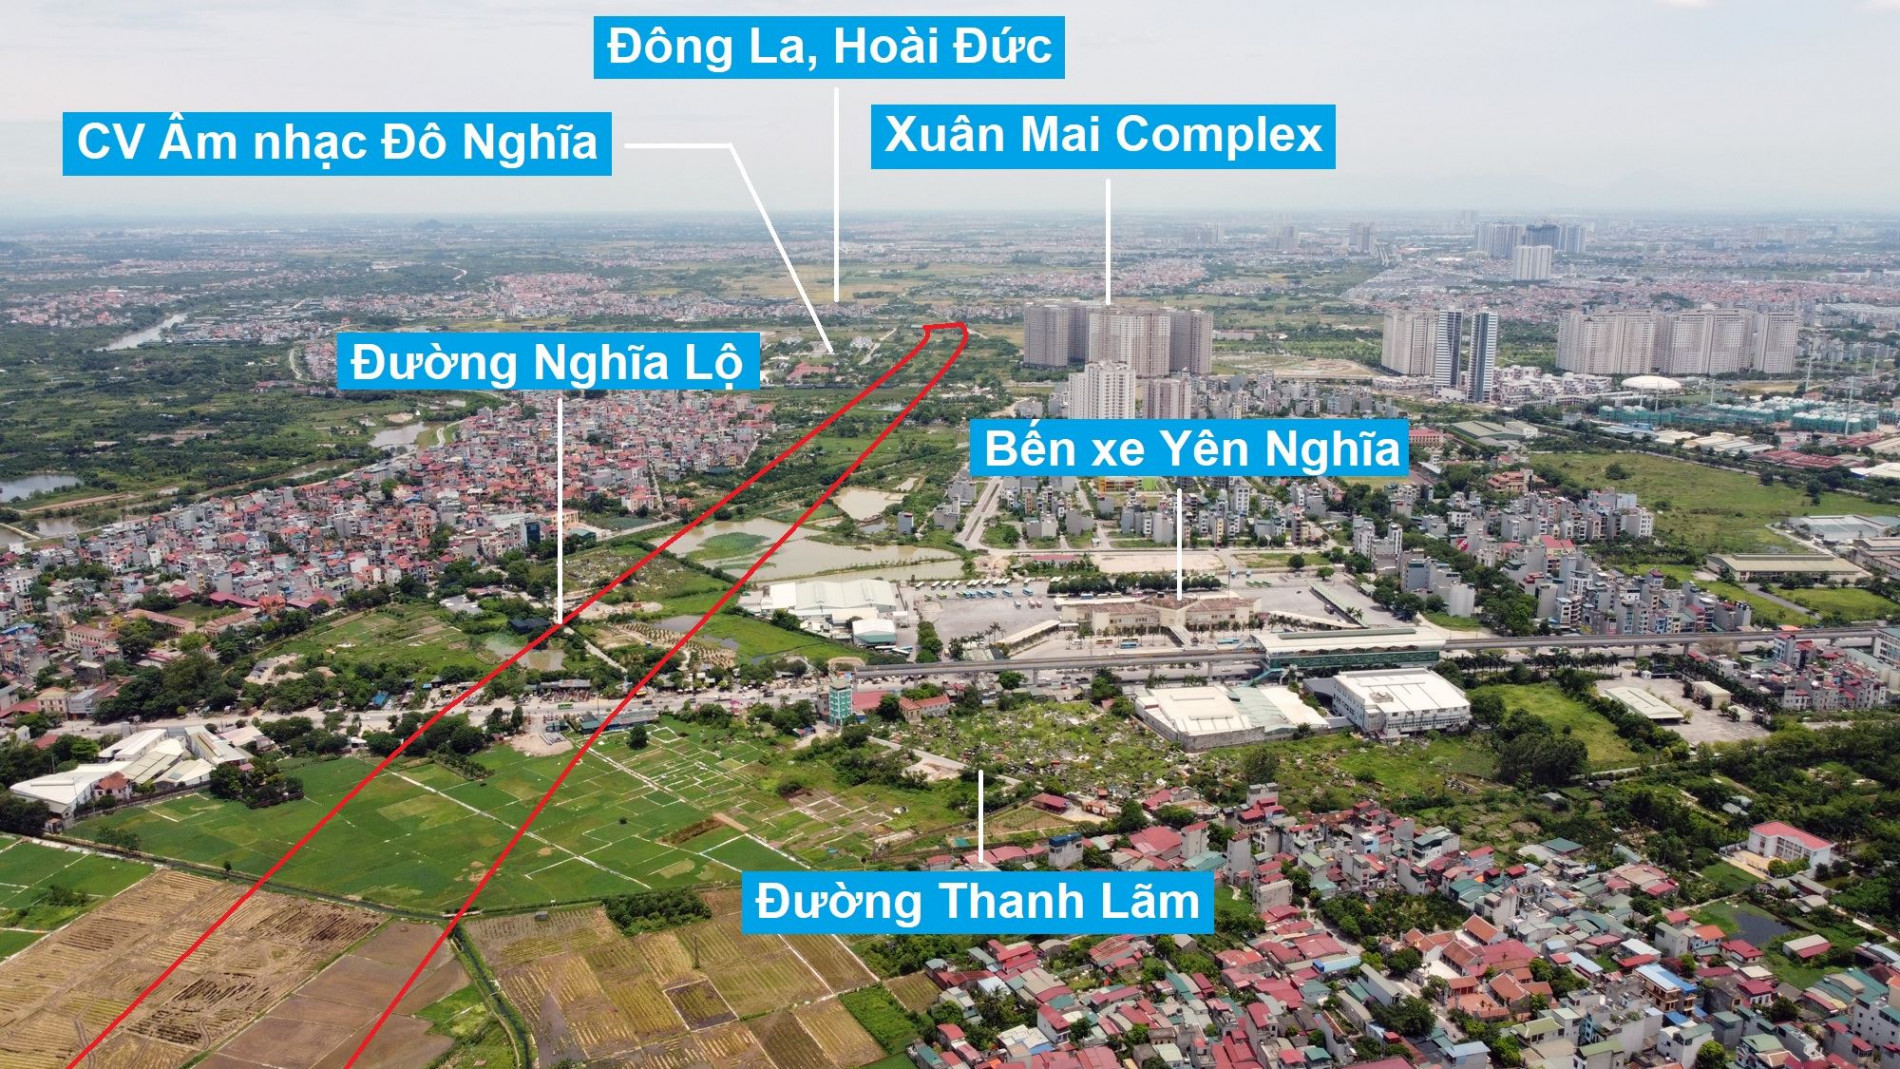 Đường Vành đai 4 sẽ mở theo quy hoạch qua quận Hà Đông, Hà Nội